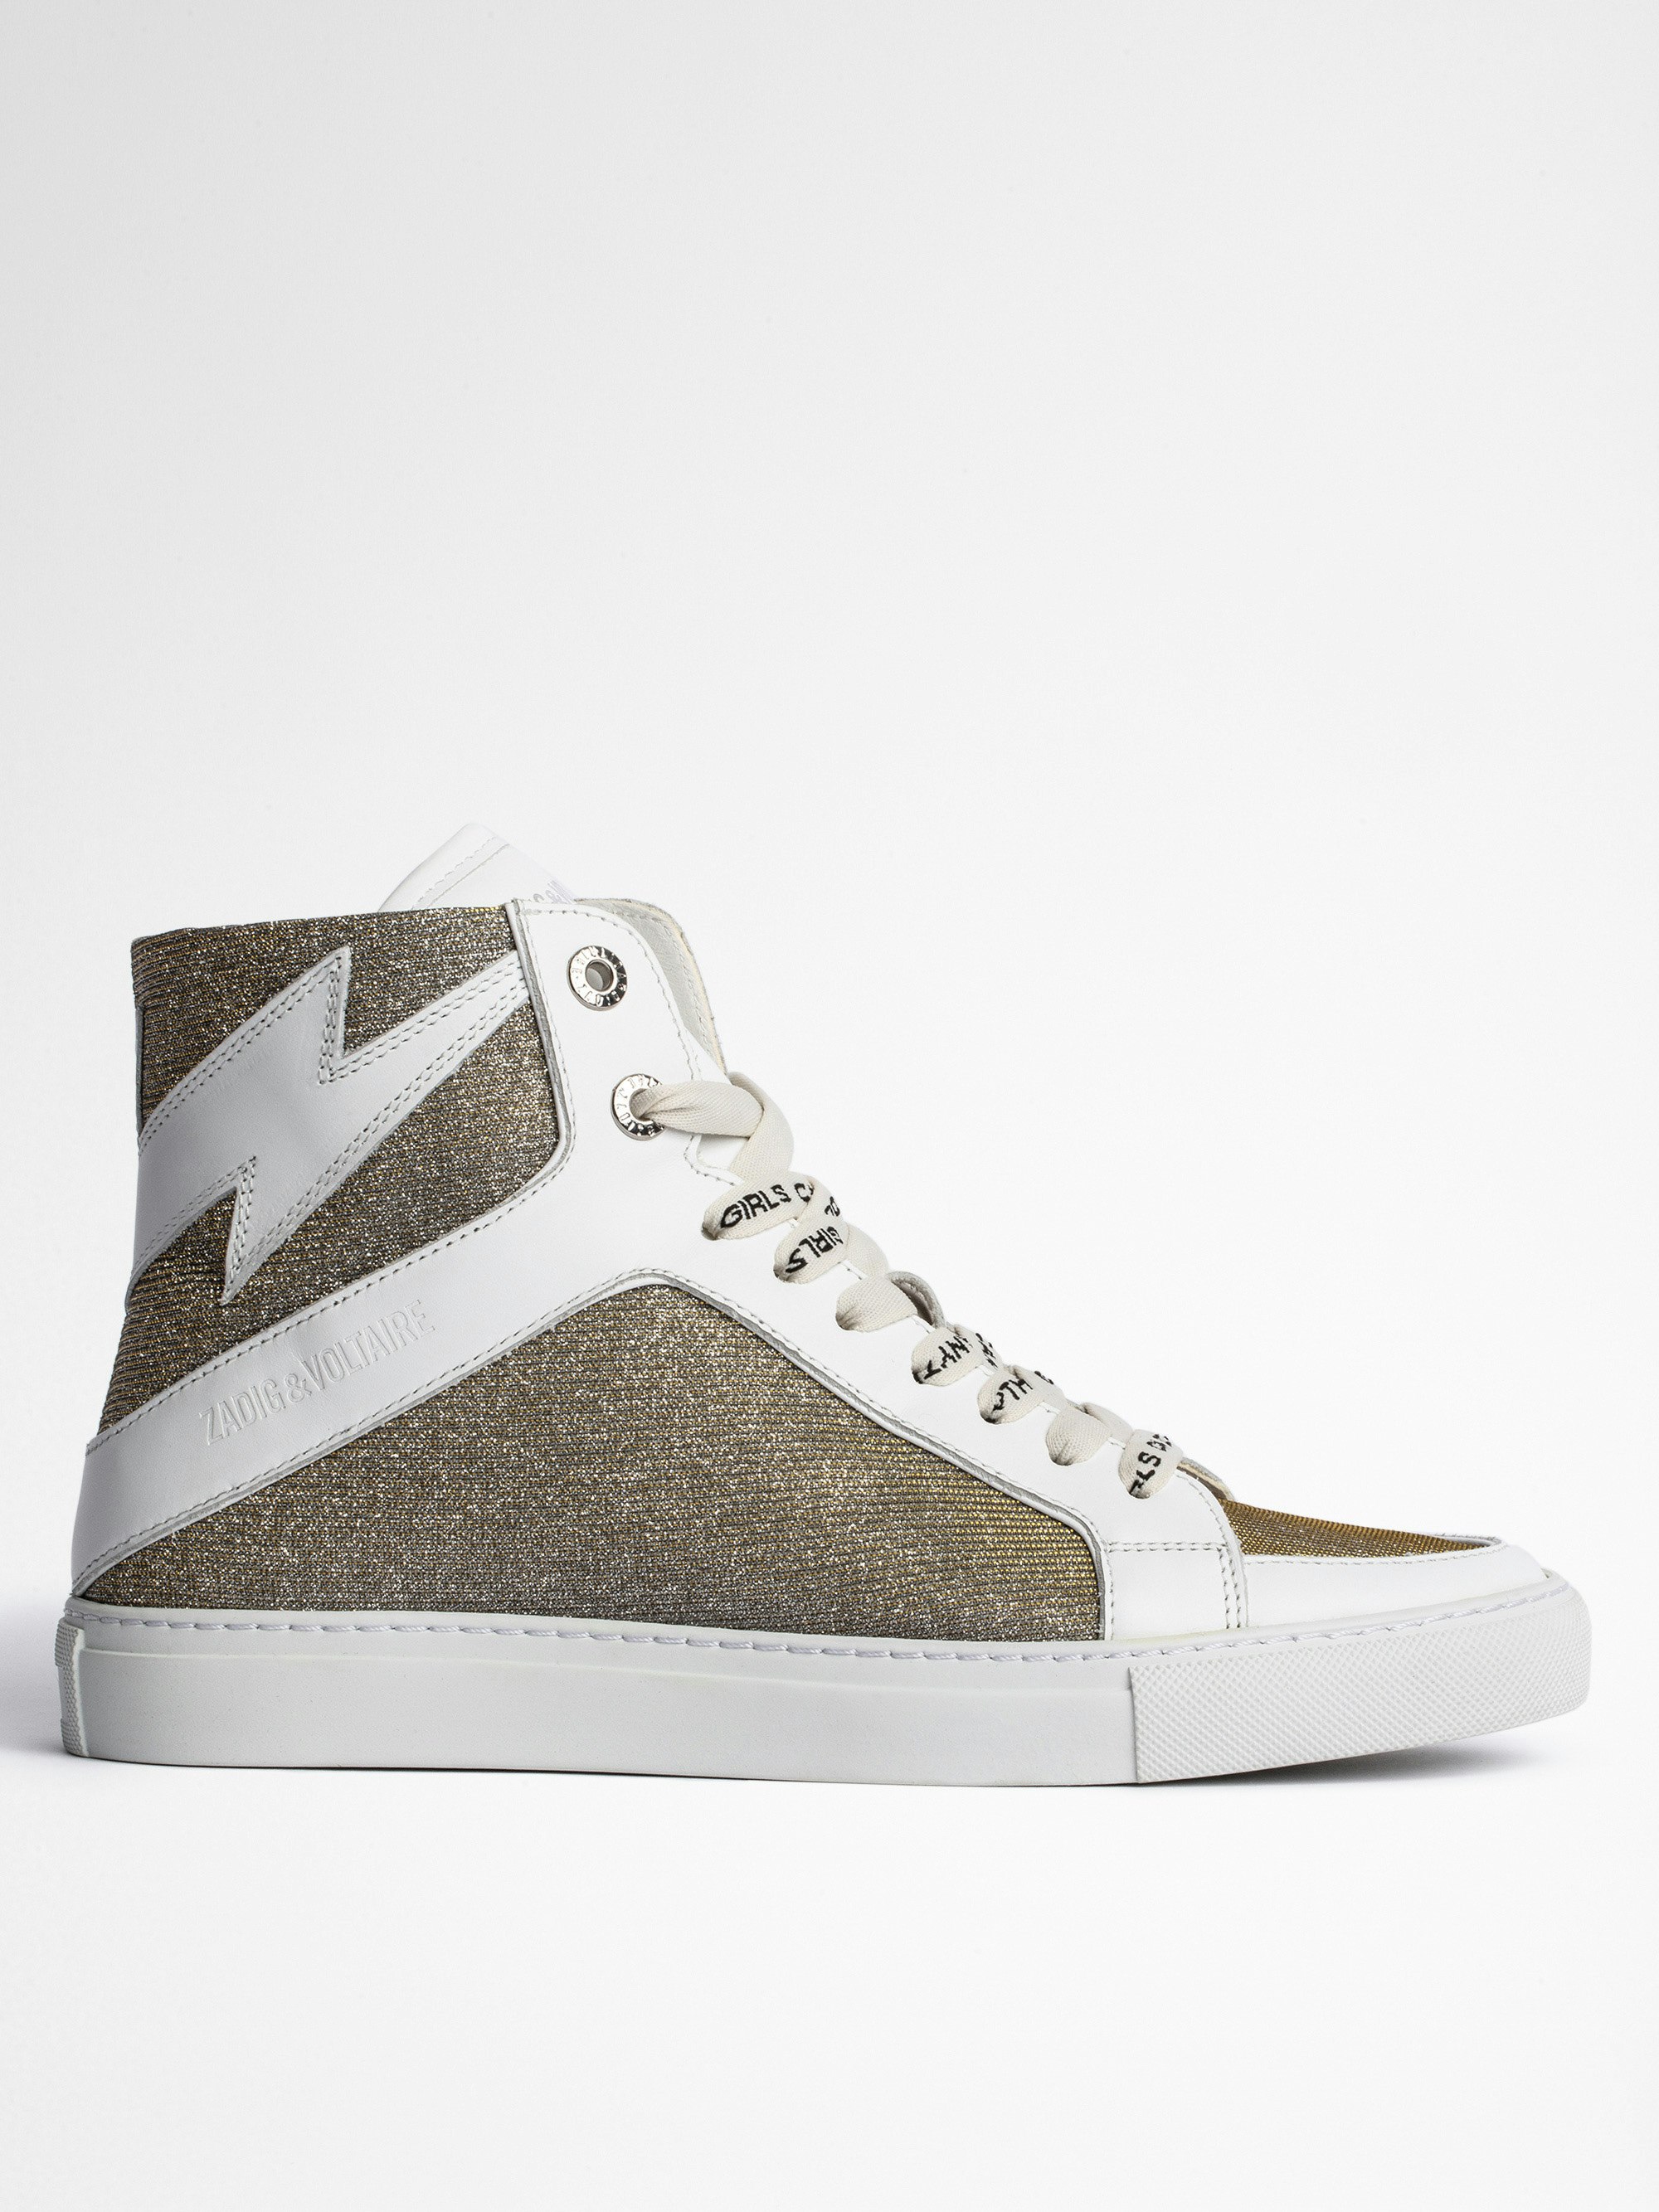 Sneakers Montantes ZV1747 High Flash - Baskets montantes en cuir lisse blanc et tissus glitter argenté.